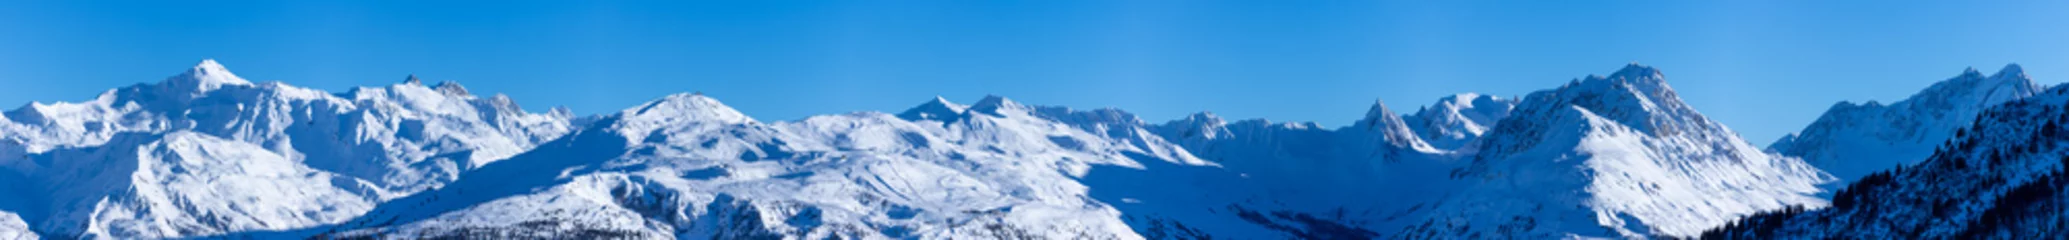  vue ultra panoramique sur une chaîne de montagnes enneigées des alpes © Tof - Photographie